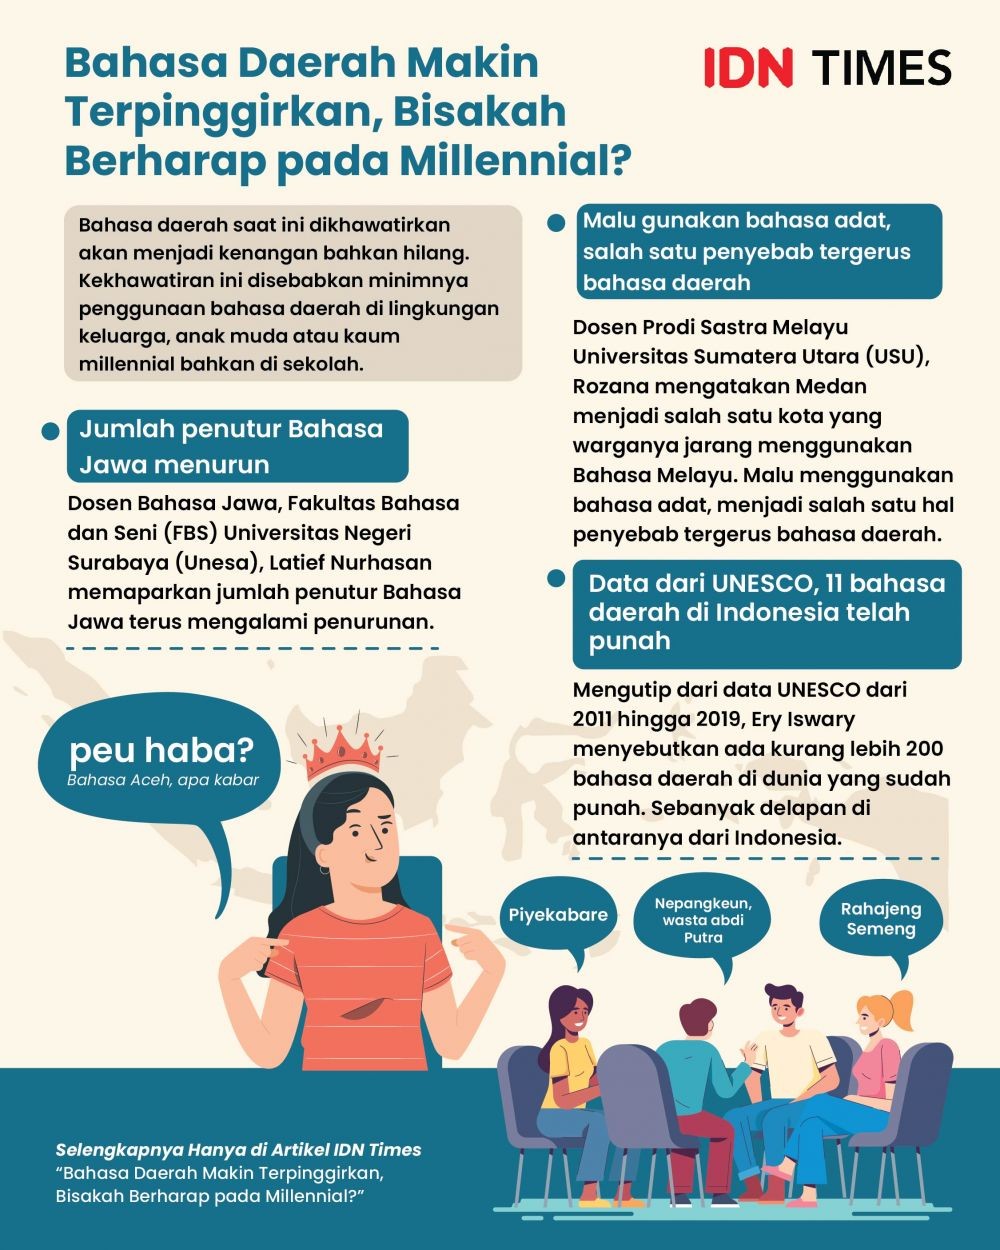 Bahasa Daerah Makin Terpinggirkan, Bisakah Berharap pada Millennial?